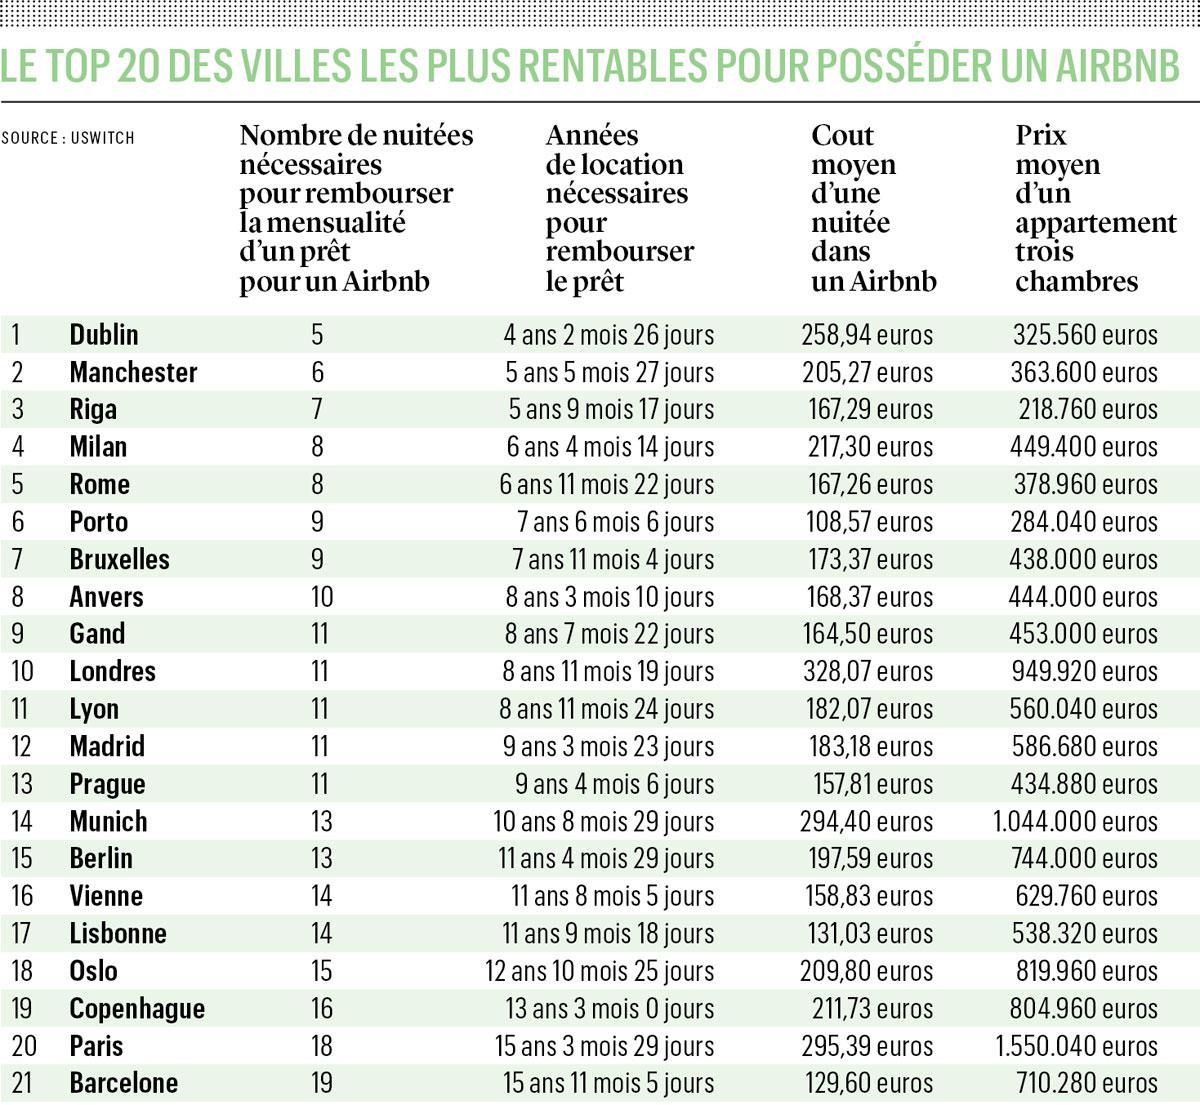 Quelles sont les villes européennes les plus rentables en matière de location Airbnb?